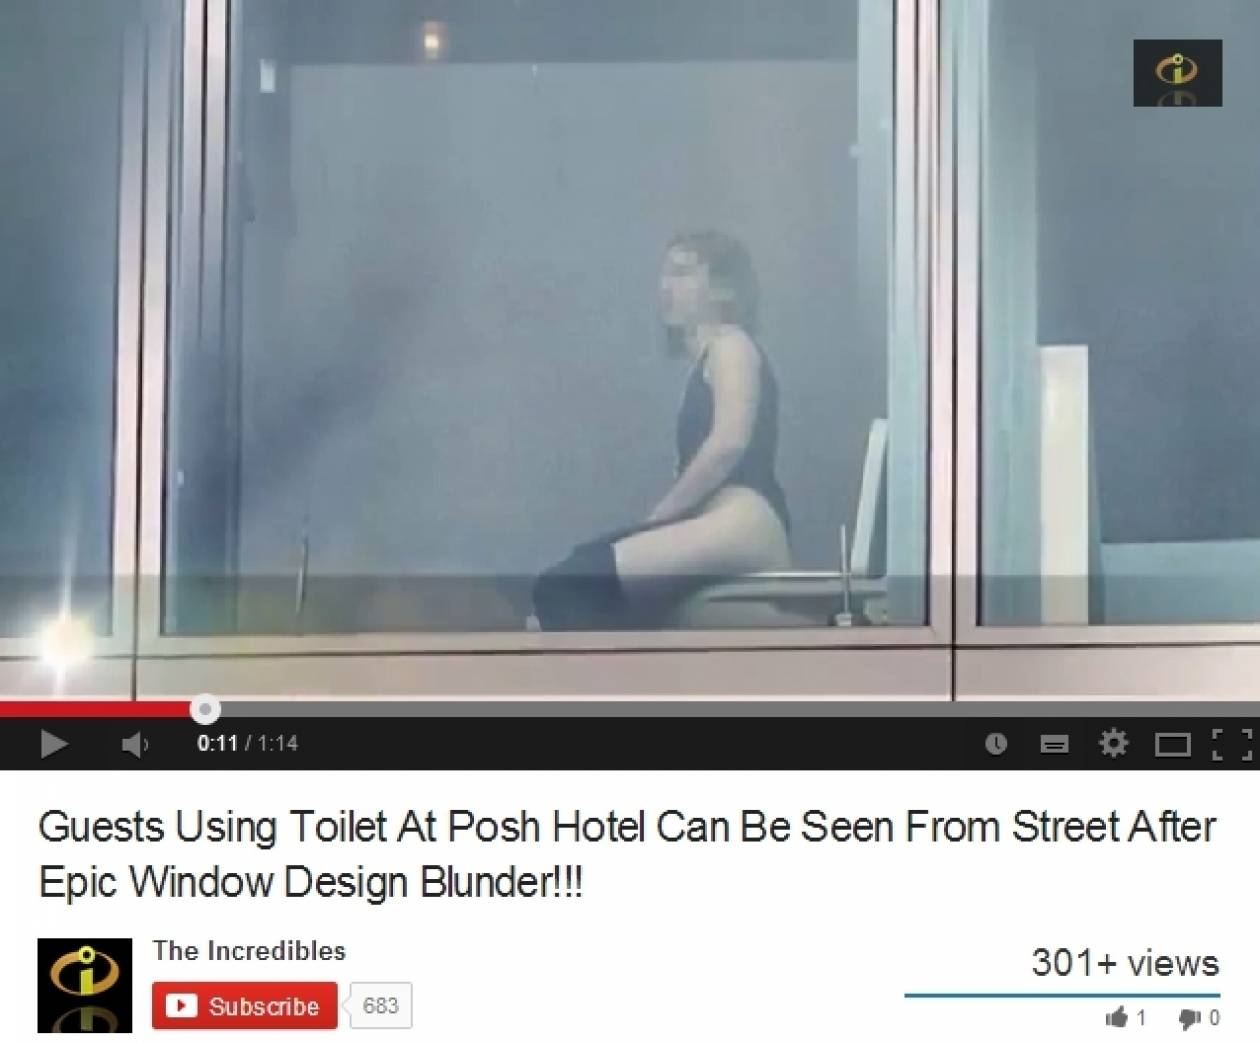 Δημοφιλές ξενοδοχείο έβαλε τις τουαλέτες μπροστά σε παράθυρα! (βίντεο)